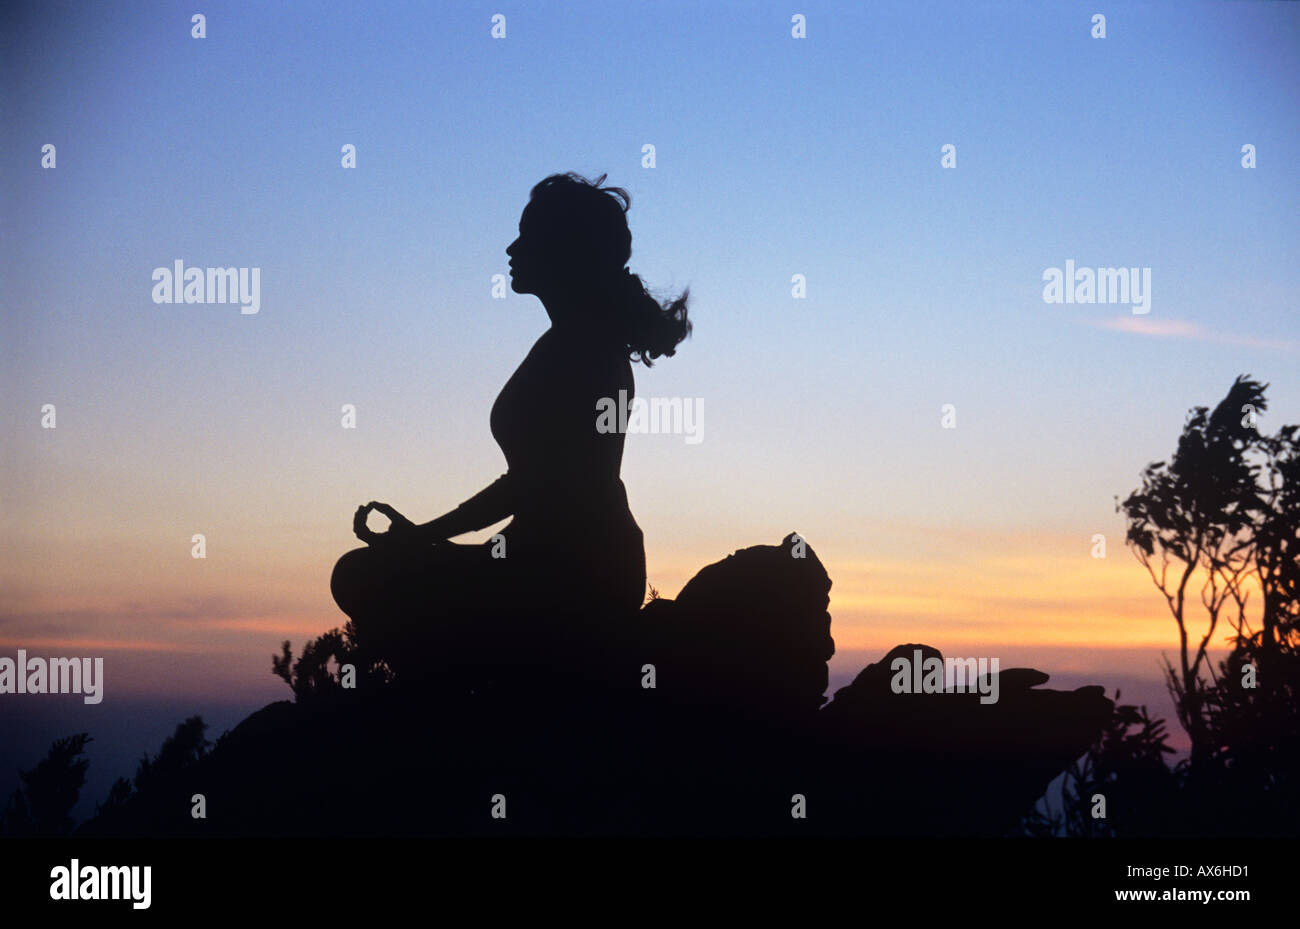 La méditation, la jeune fille dans la méditation en plein air au coucher du soleil. La paix, l'harmonie et la spiritualité. Banque D'Images